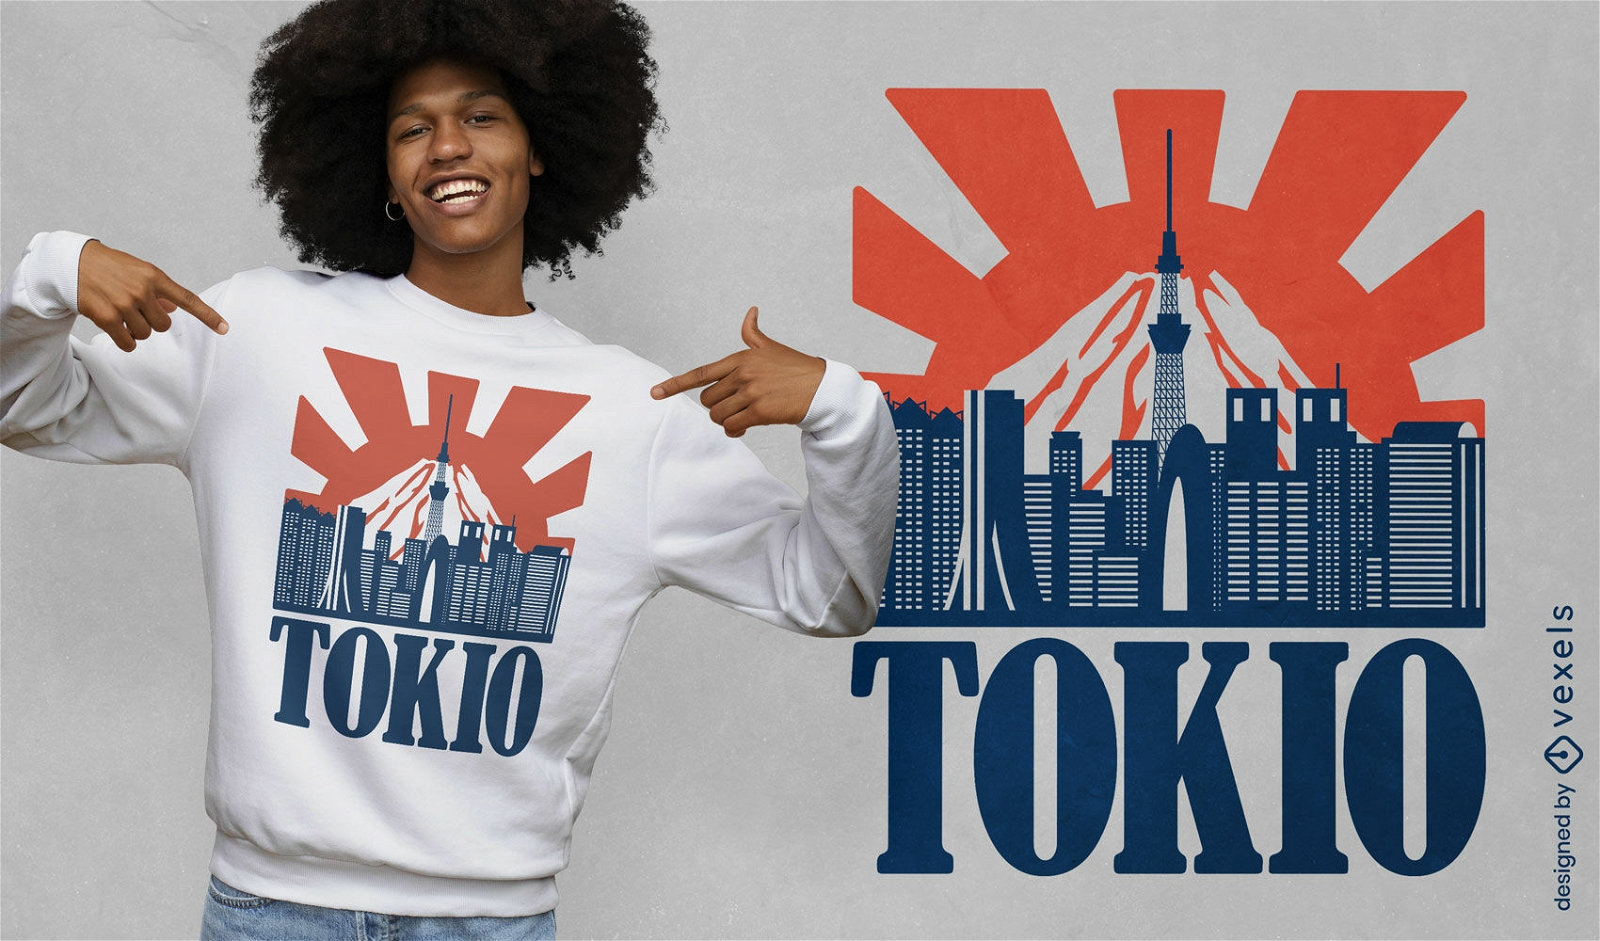 Dise?o de camiseta del horizonte de la ciudad de Tokio